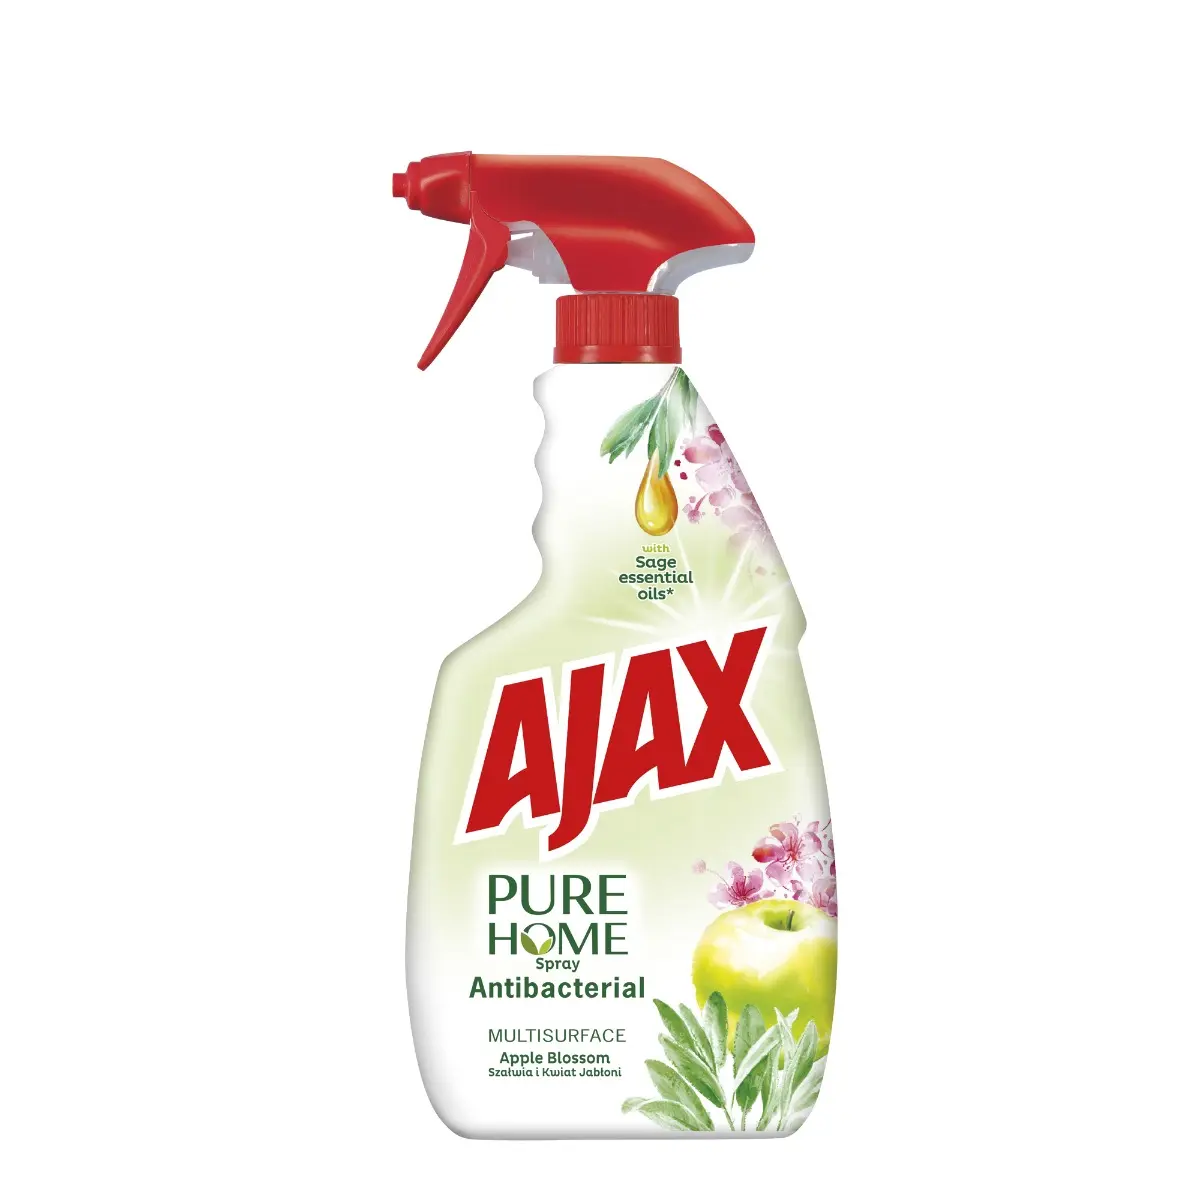 Detergent Ajax Pure Home Antibacterial, dezinfectant multisuprafete, Apple Blossom, 500 ml